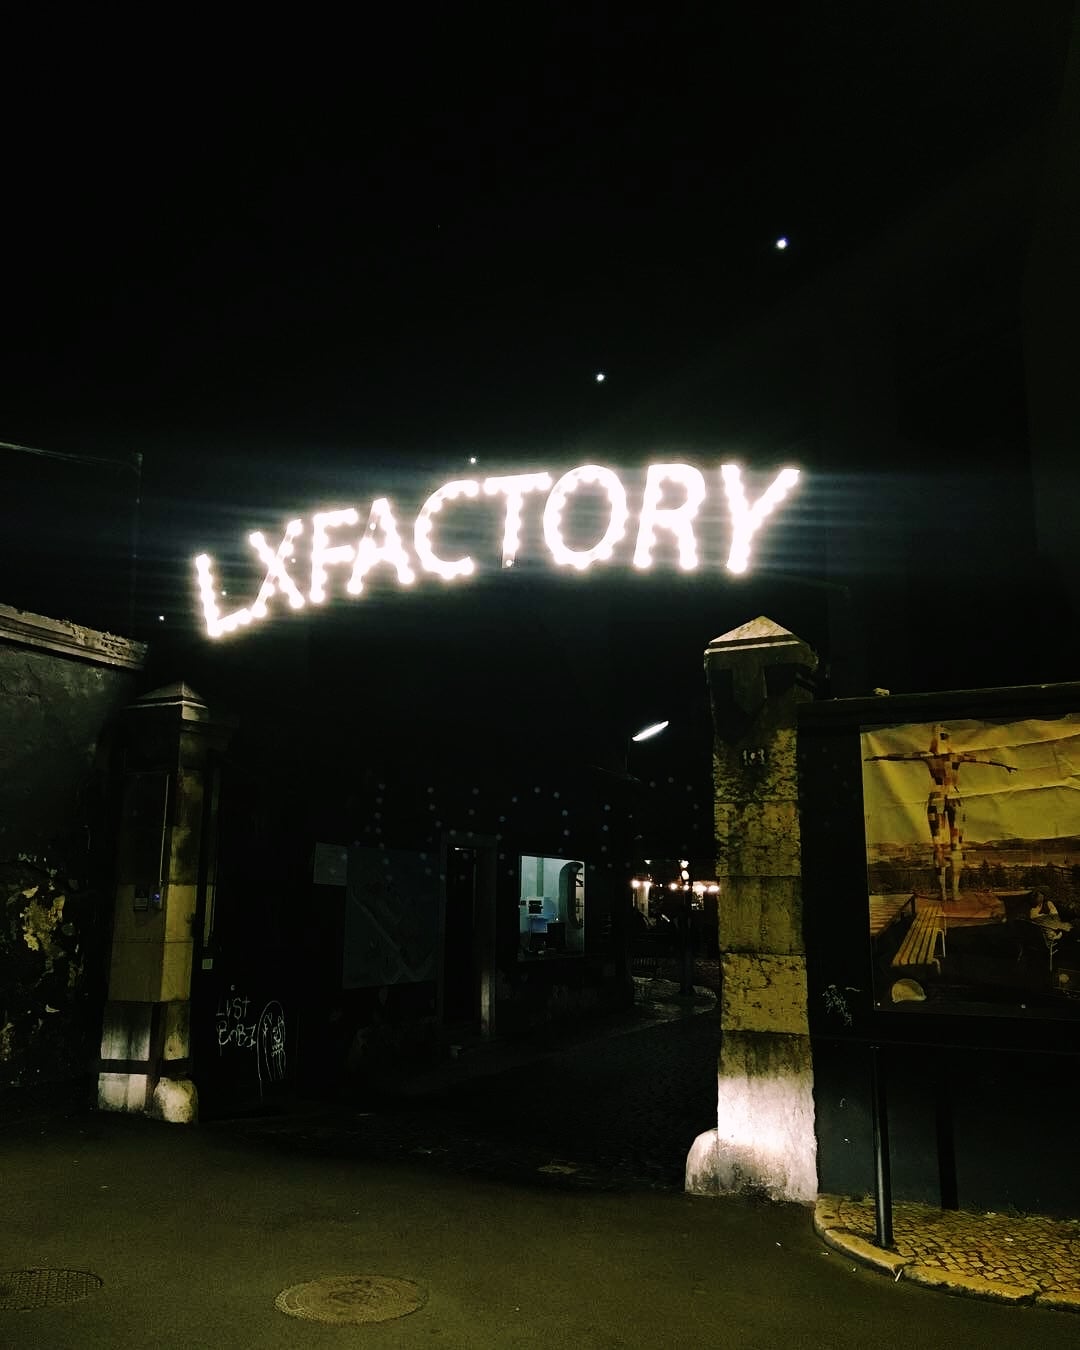 lisabona obiective turistice, Lisabona obiective turistice sau LX Factory – de la fabrică abandonată, la insulă creativă